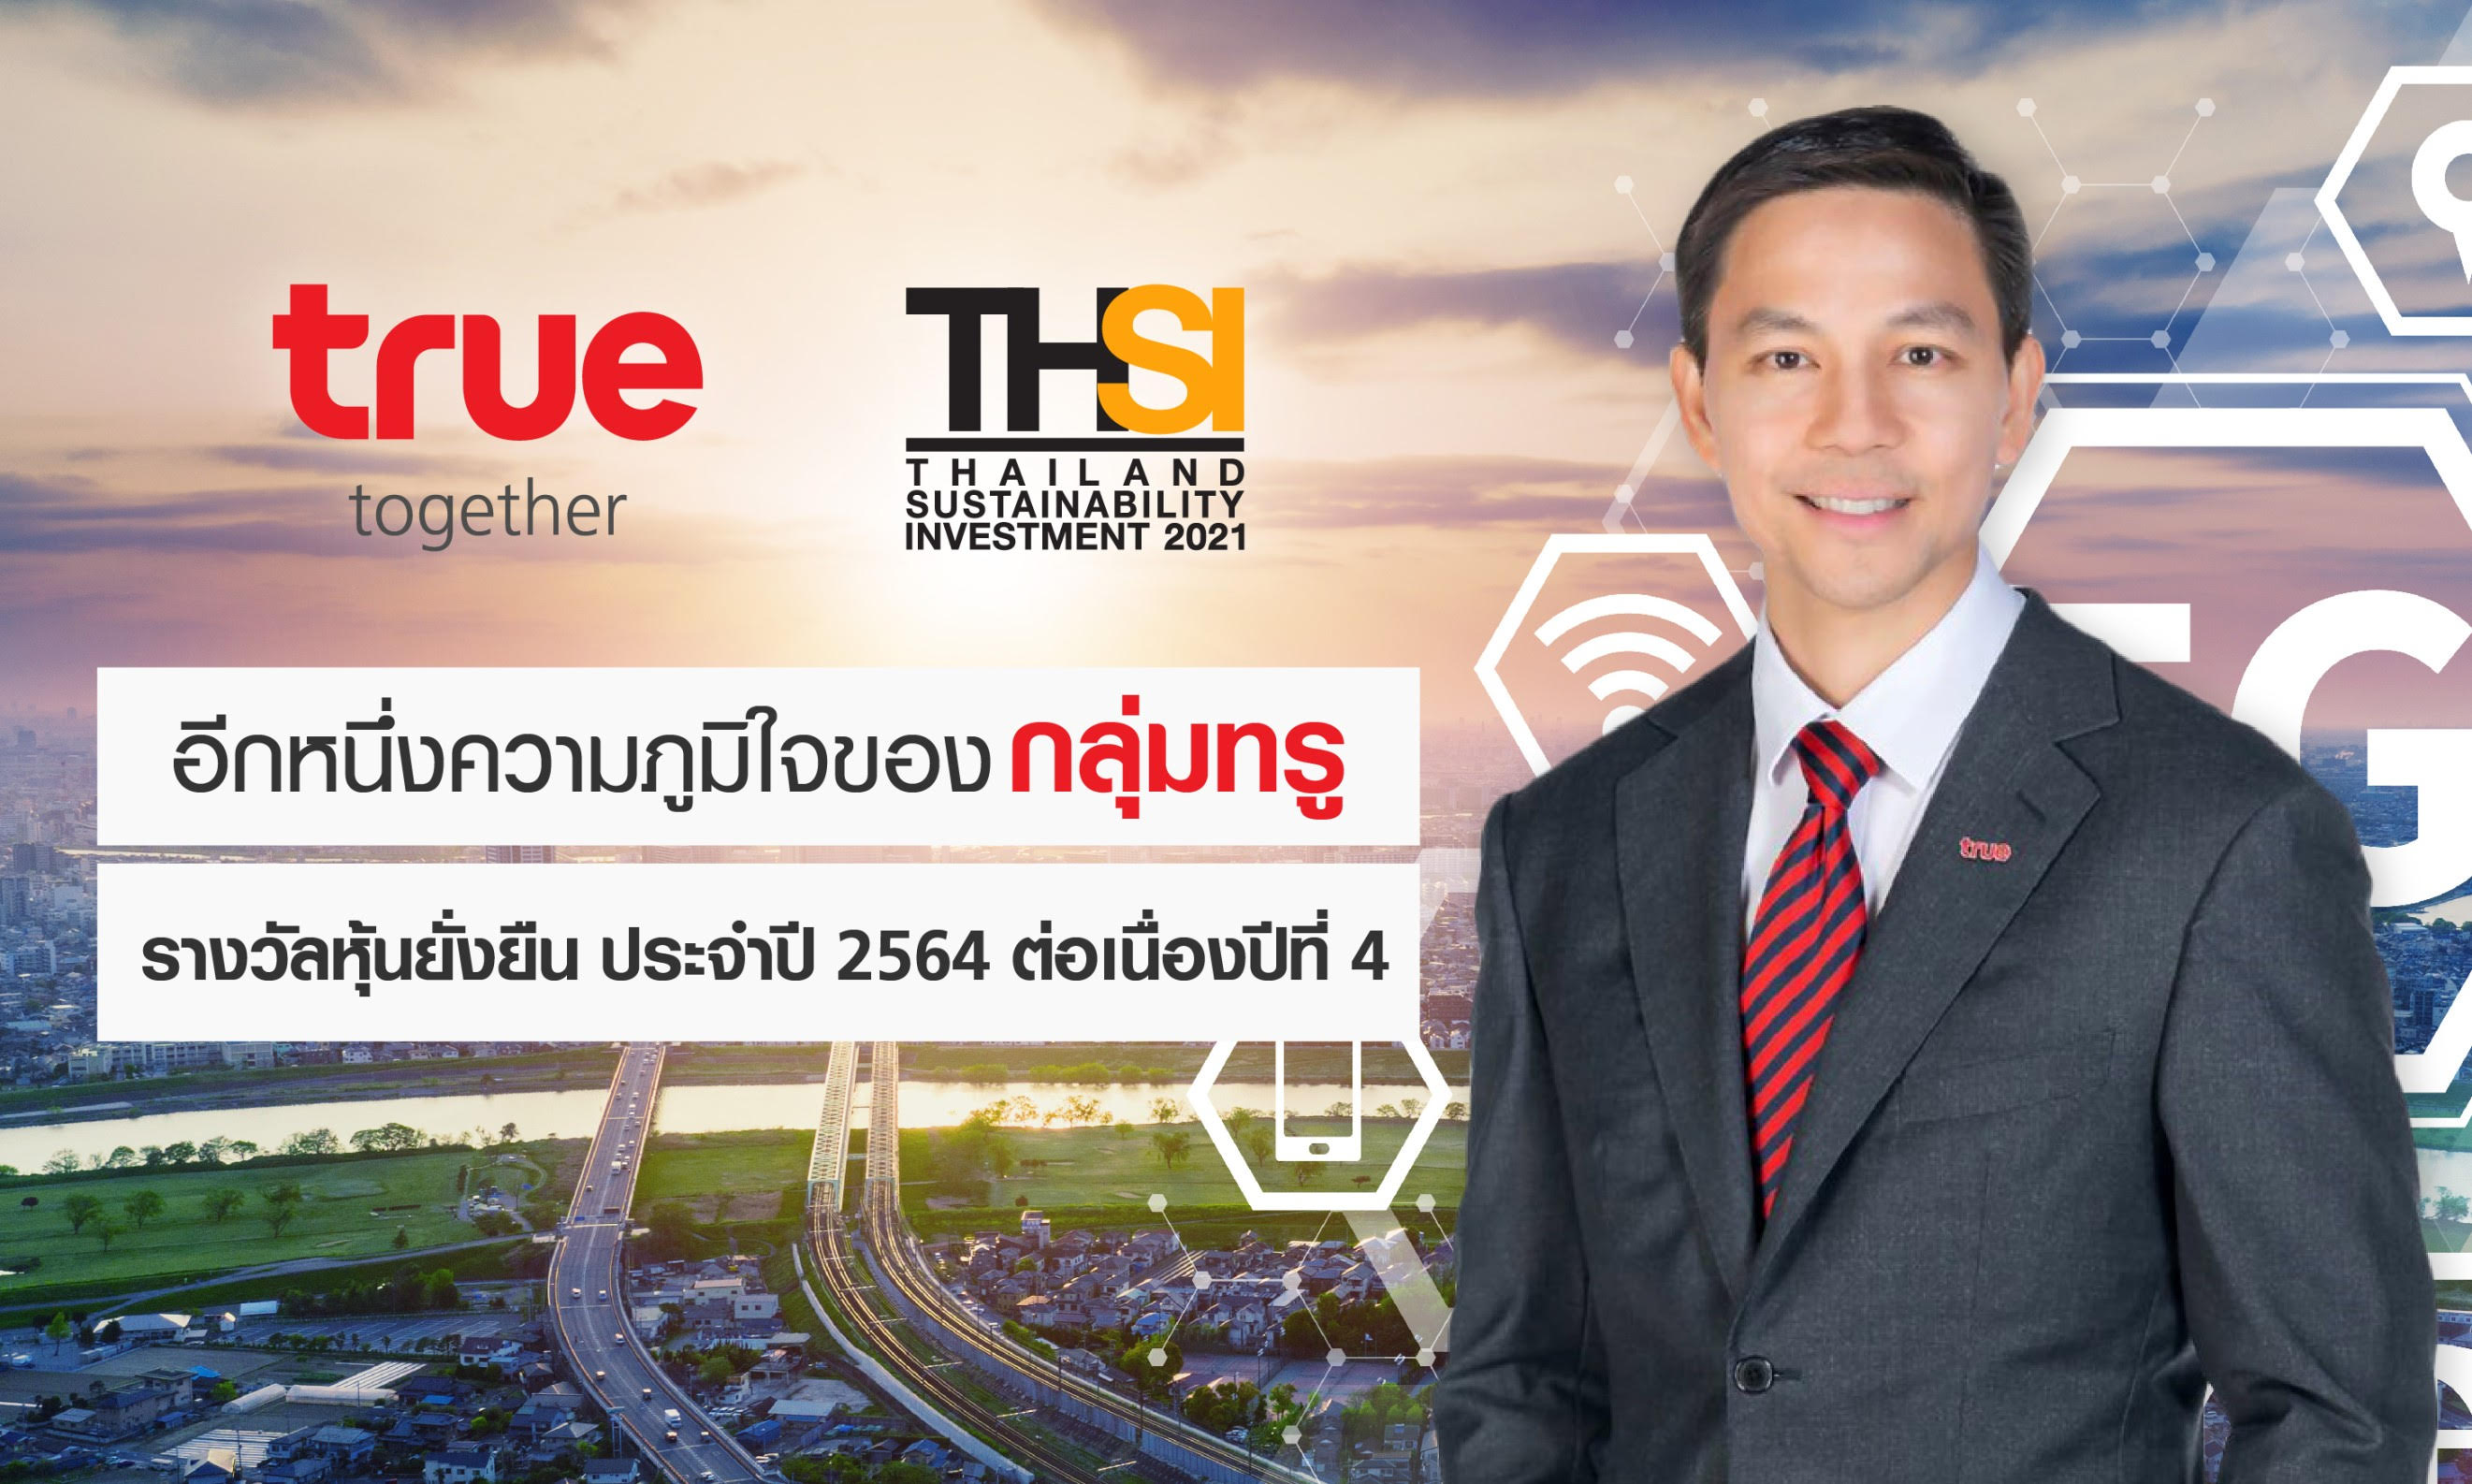 กลุ่มทรู คว้ารางวัลหุ้นยั่งยืน Thailand Sustainability Investment (THSI) ประจำปี 2564 ต่อเนื่อง 4 ปี สะท้อนความเป็นผู้นำการดำเนินธุรกิจบนแนวทางการพัฒนาอย่างยั่งยืน